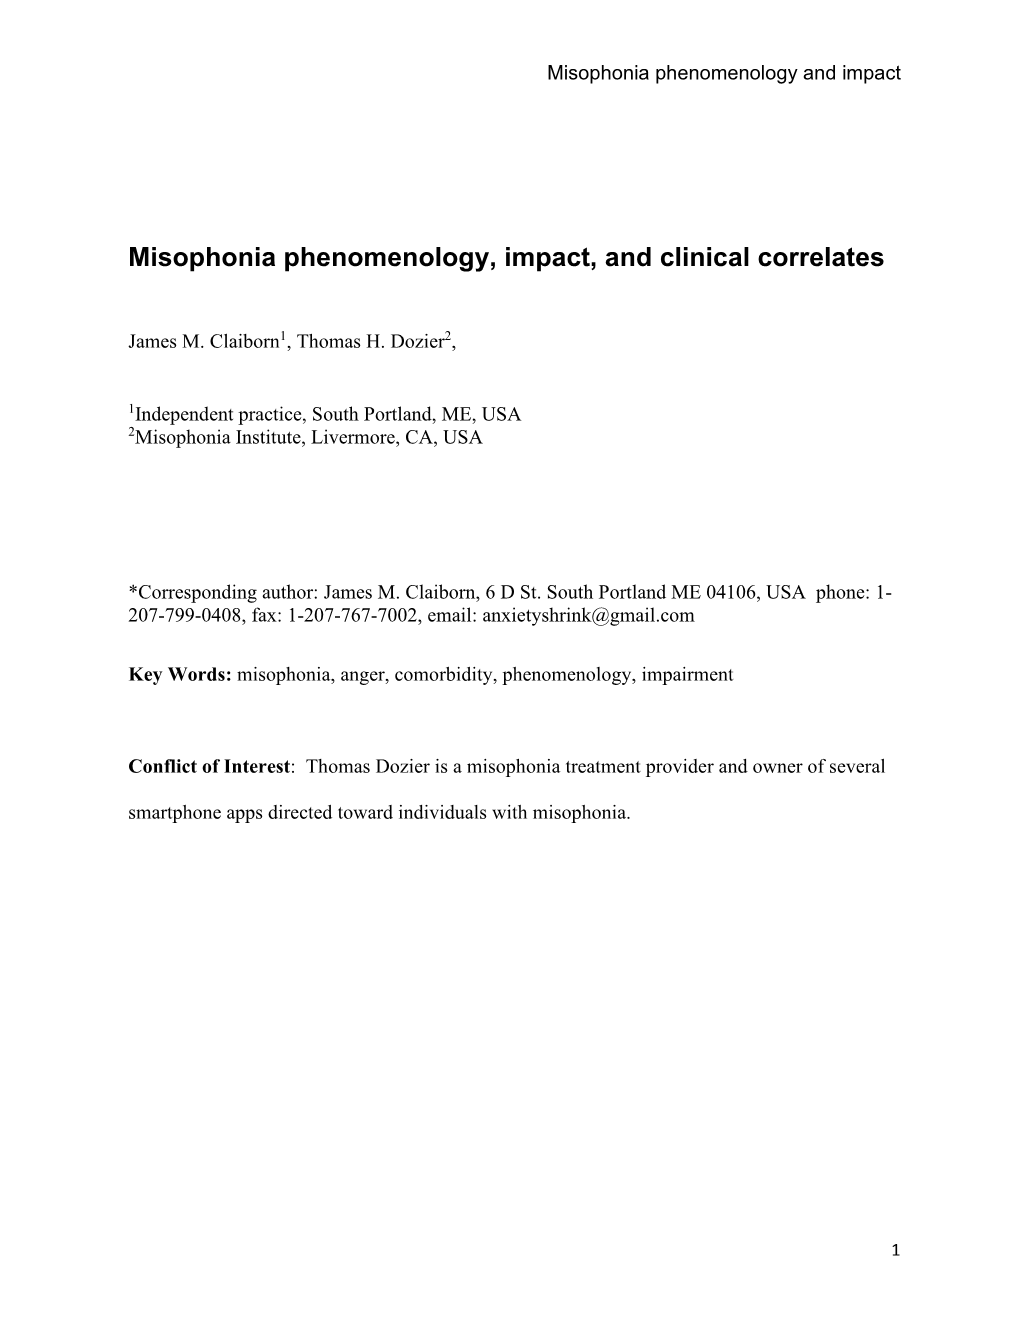 Misophonia Phenomenology, Impact, and Clinical Correlates